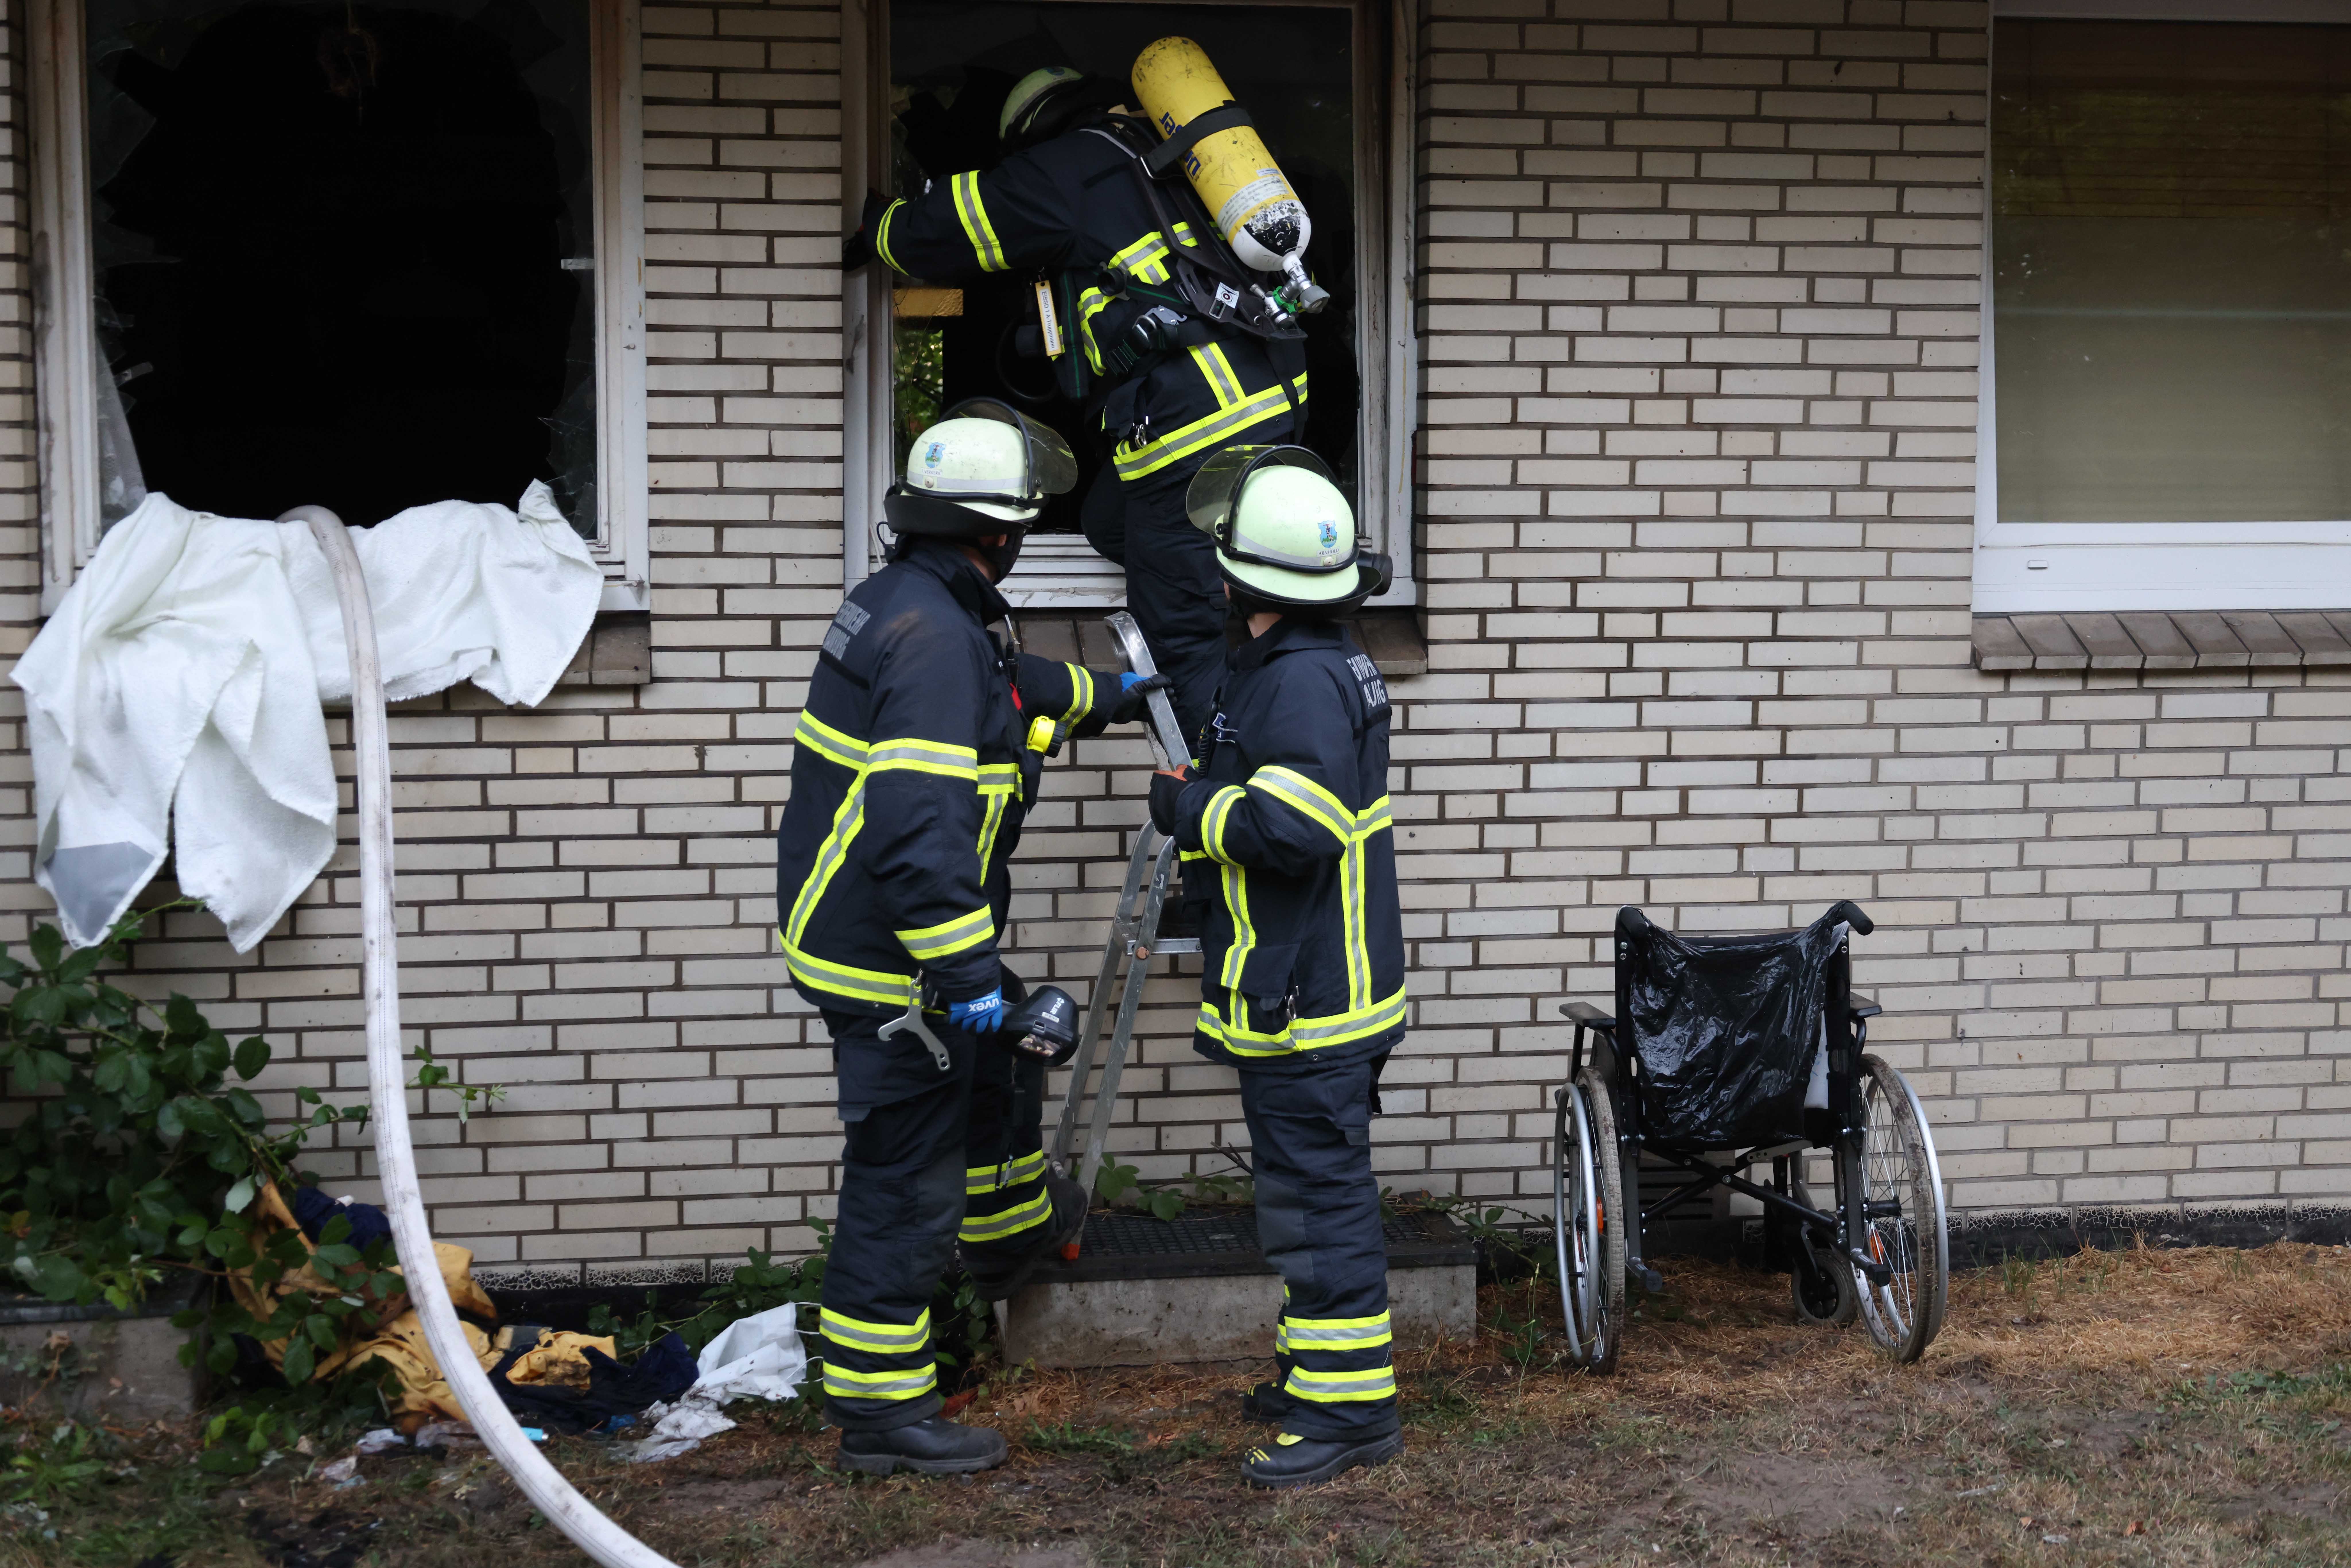 Wohnungsbrand in Hamburg – Feuerwehr rettet Bewohnerin